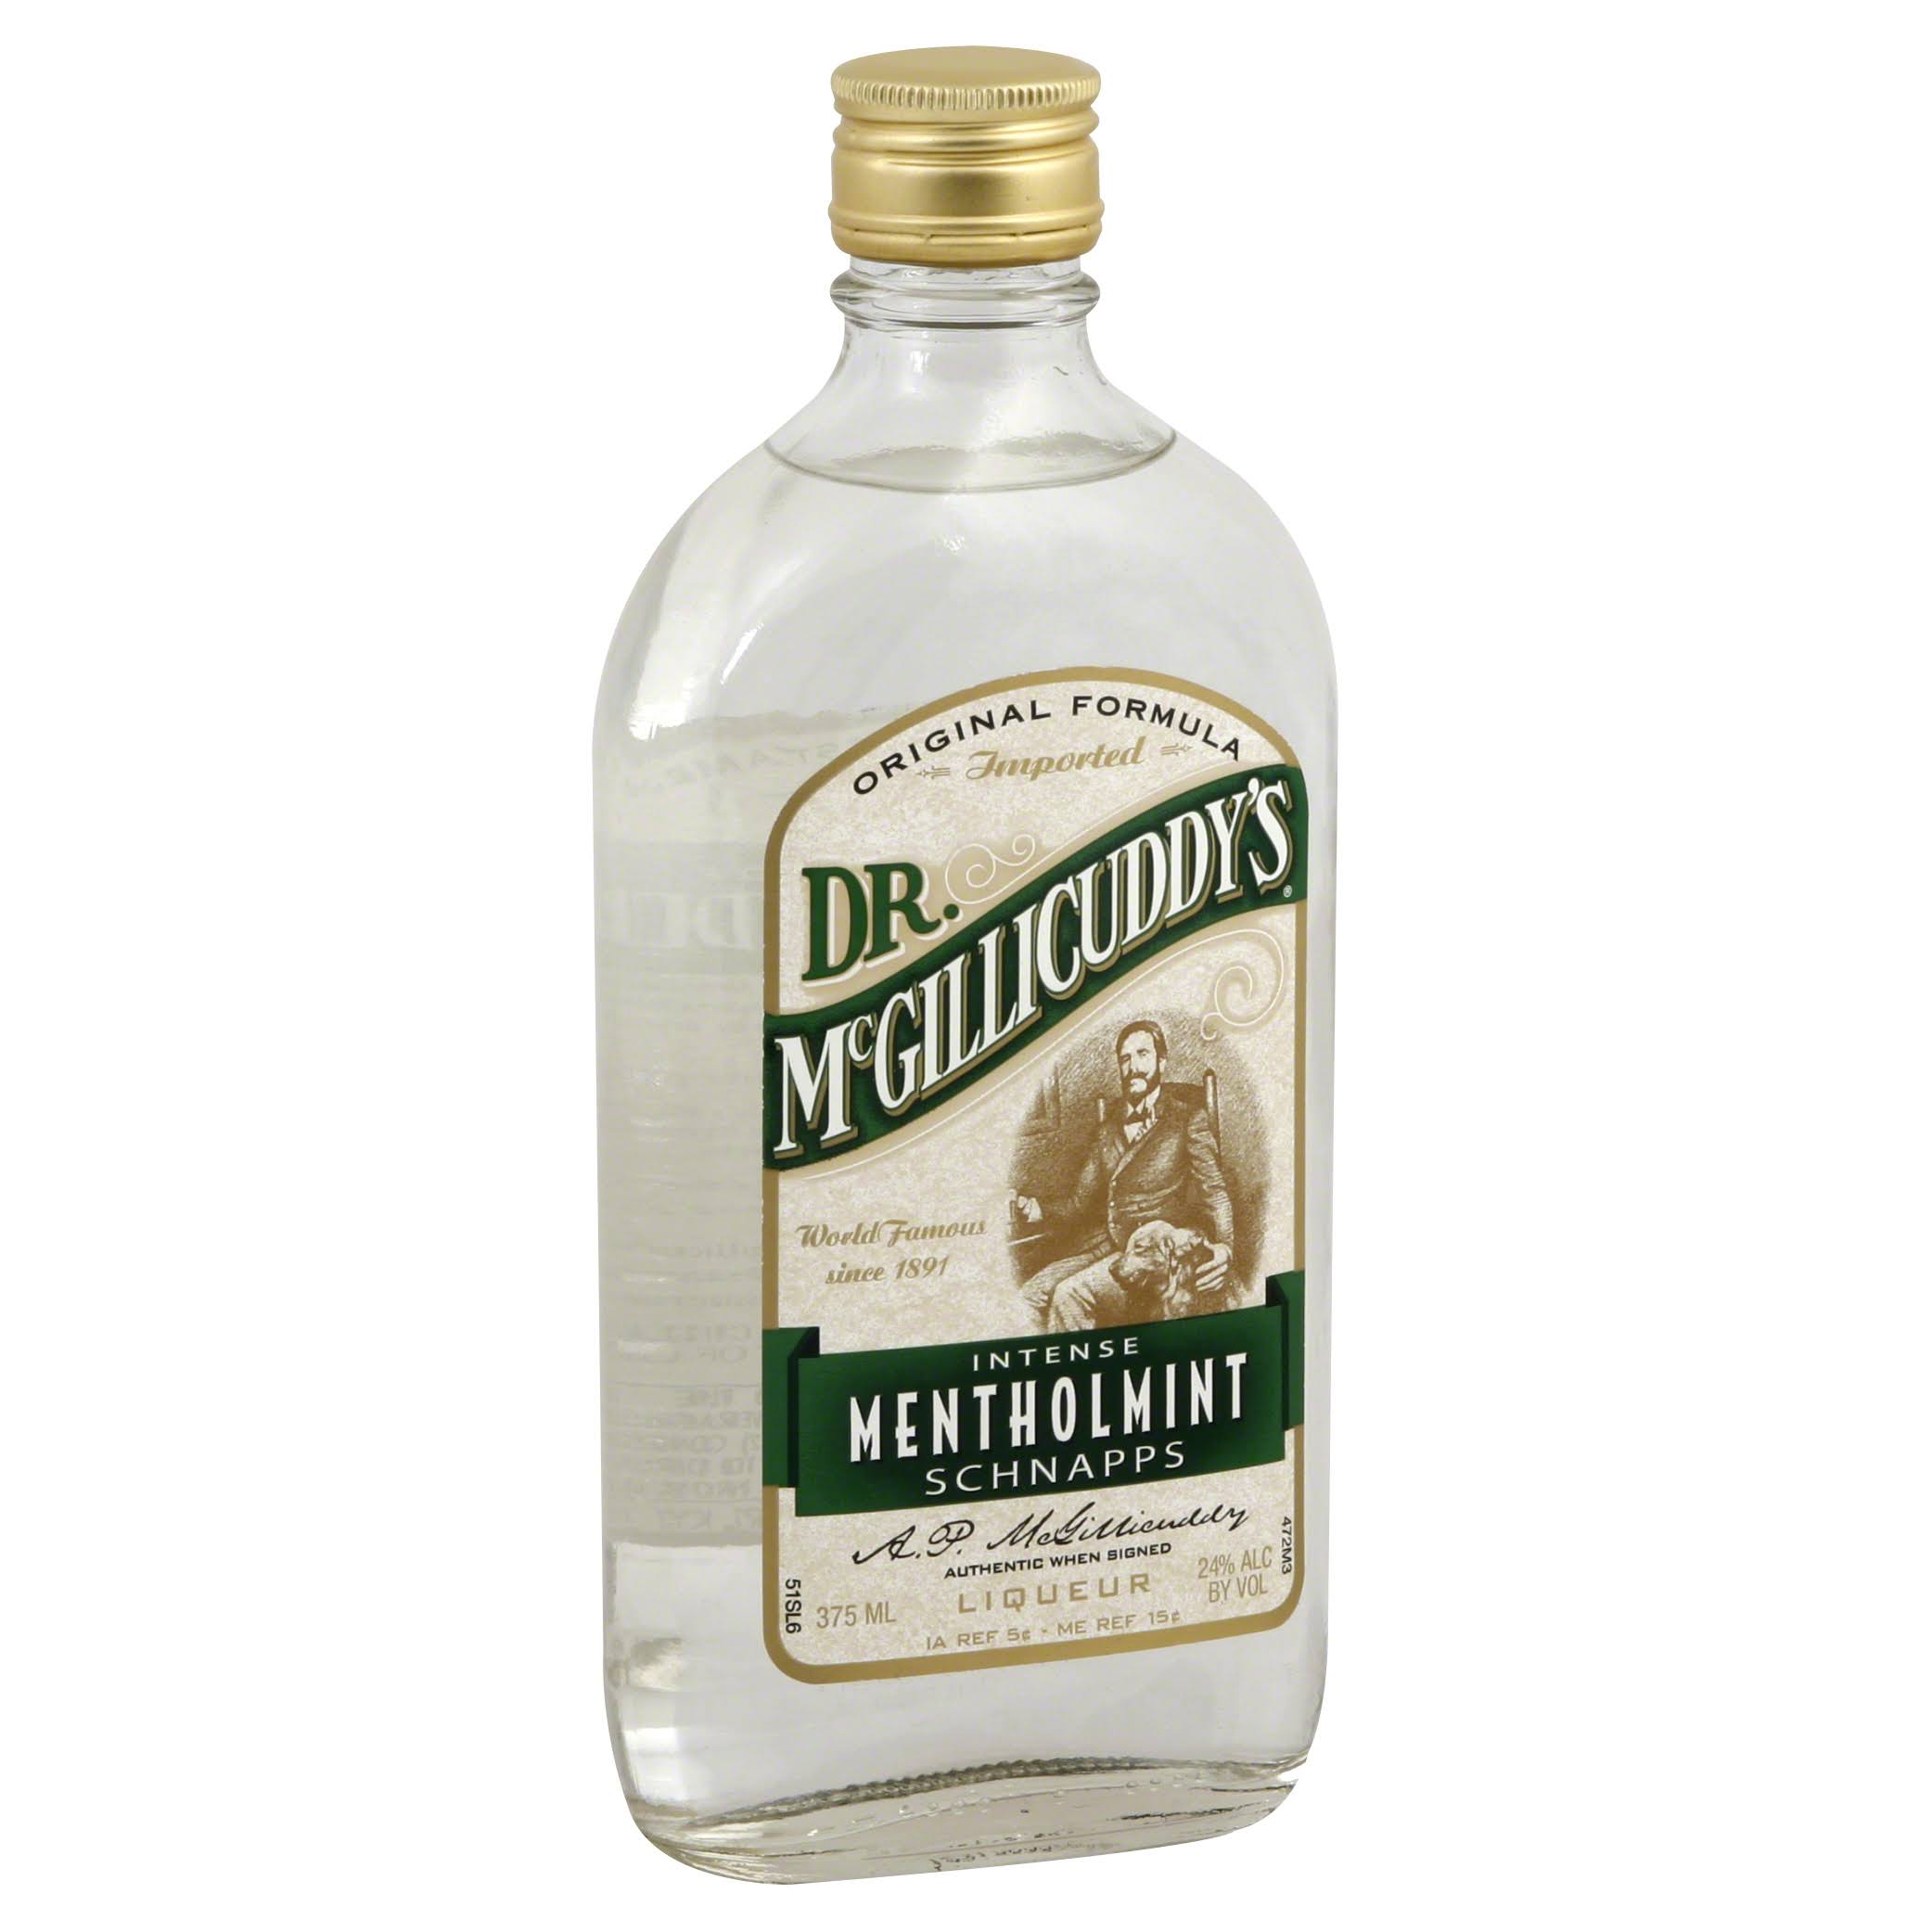 Dr McGillicuddys Liqueur, Intense Mentholmint Schnapps - 375 ml